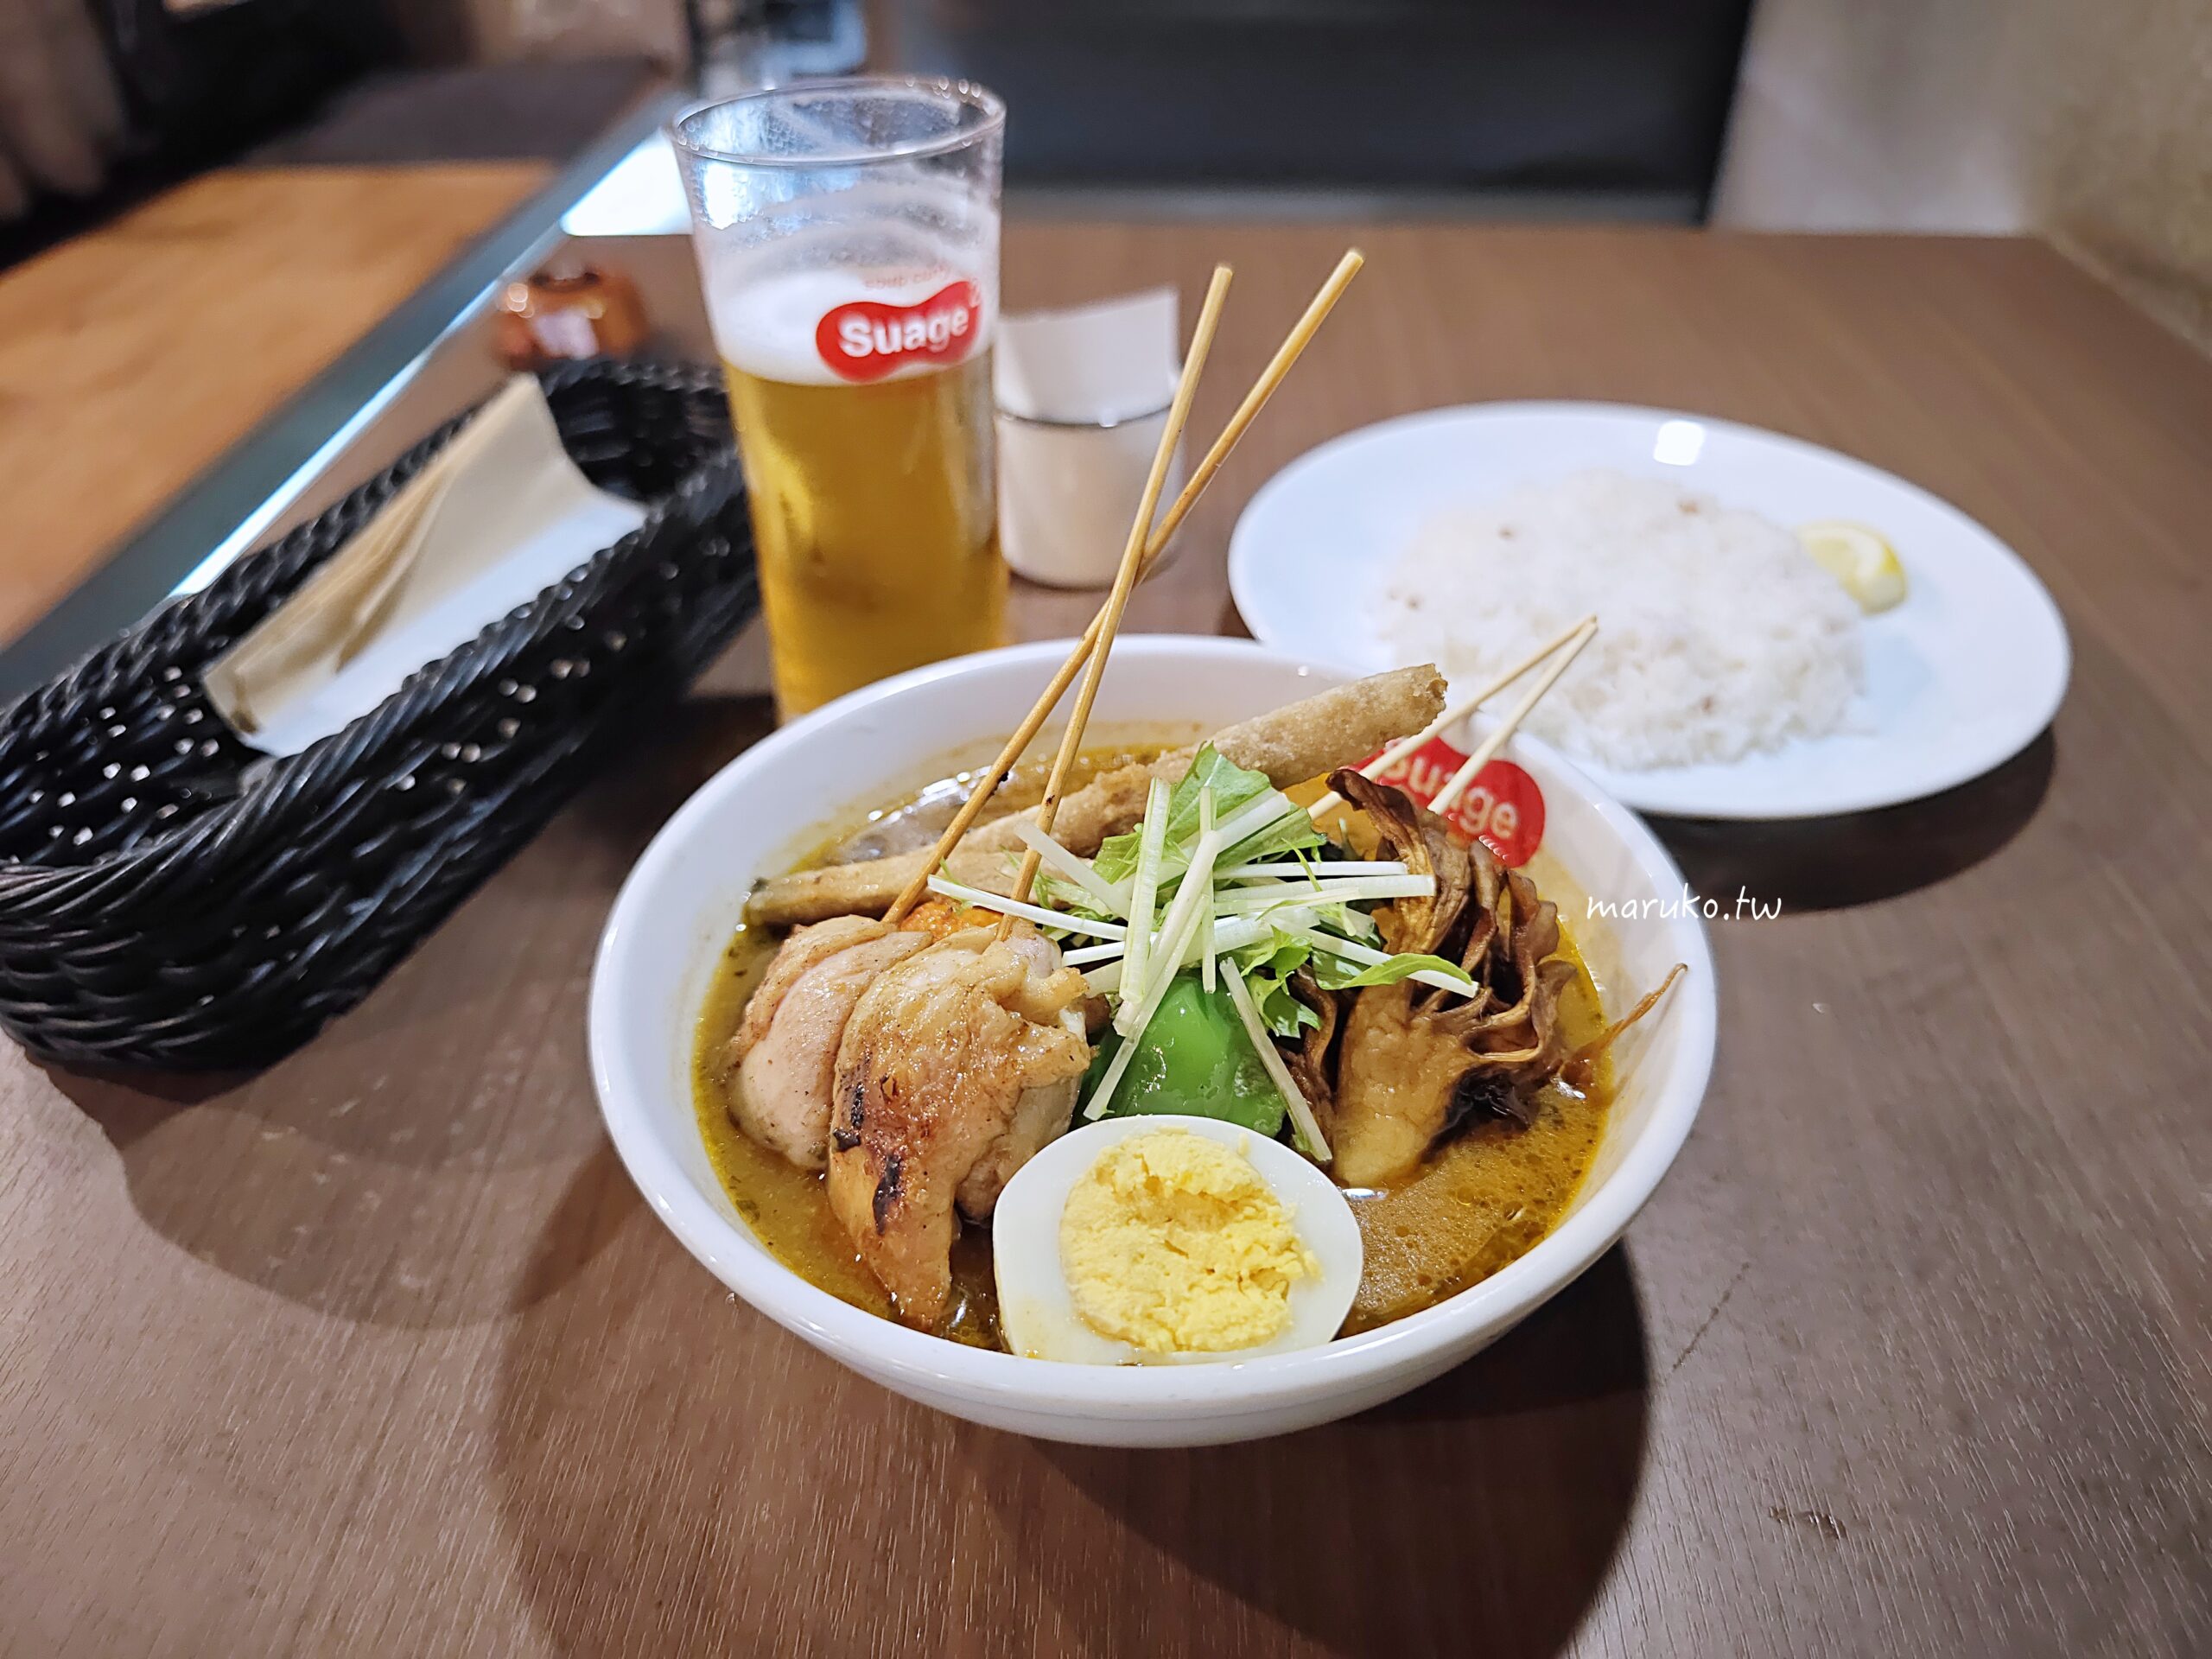 【札幌】Soup curry Suage+ 札幌市民最愛的北海道湯咖哩，地鐵薄野站週邊美食！ @Maruko與美食有個約會